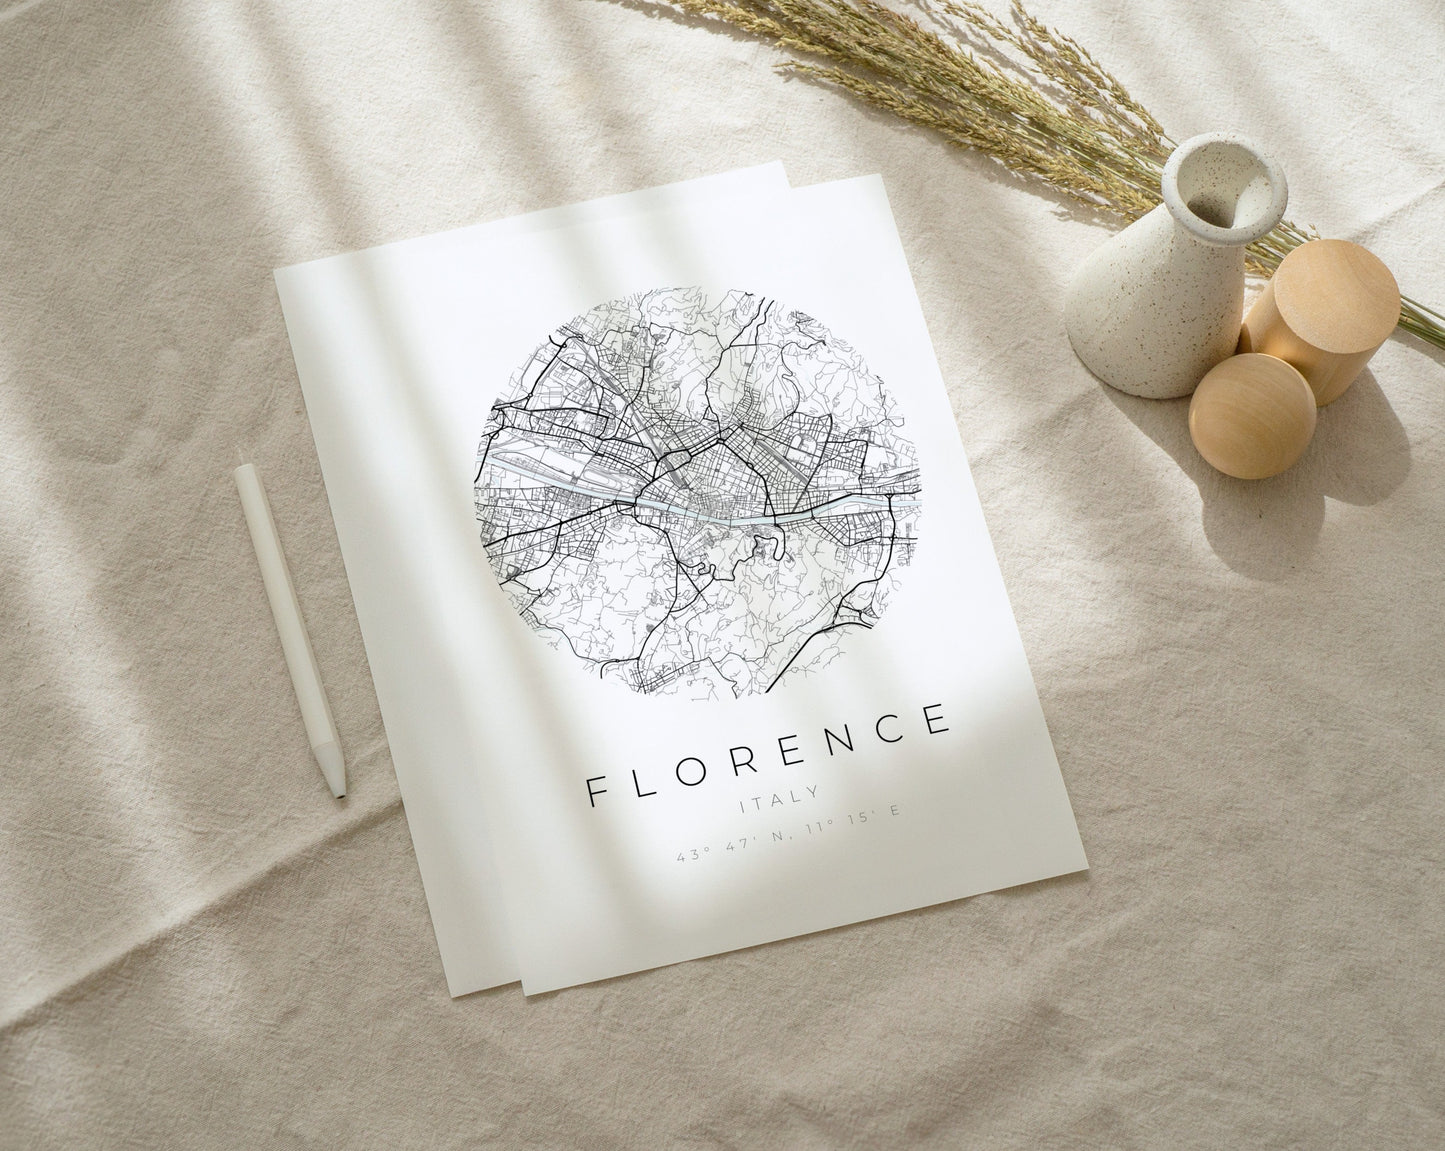 Florenz Poster | Karte kreisförmig